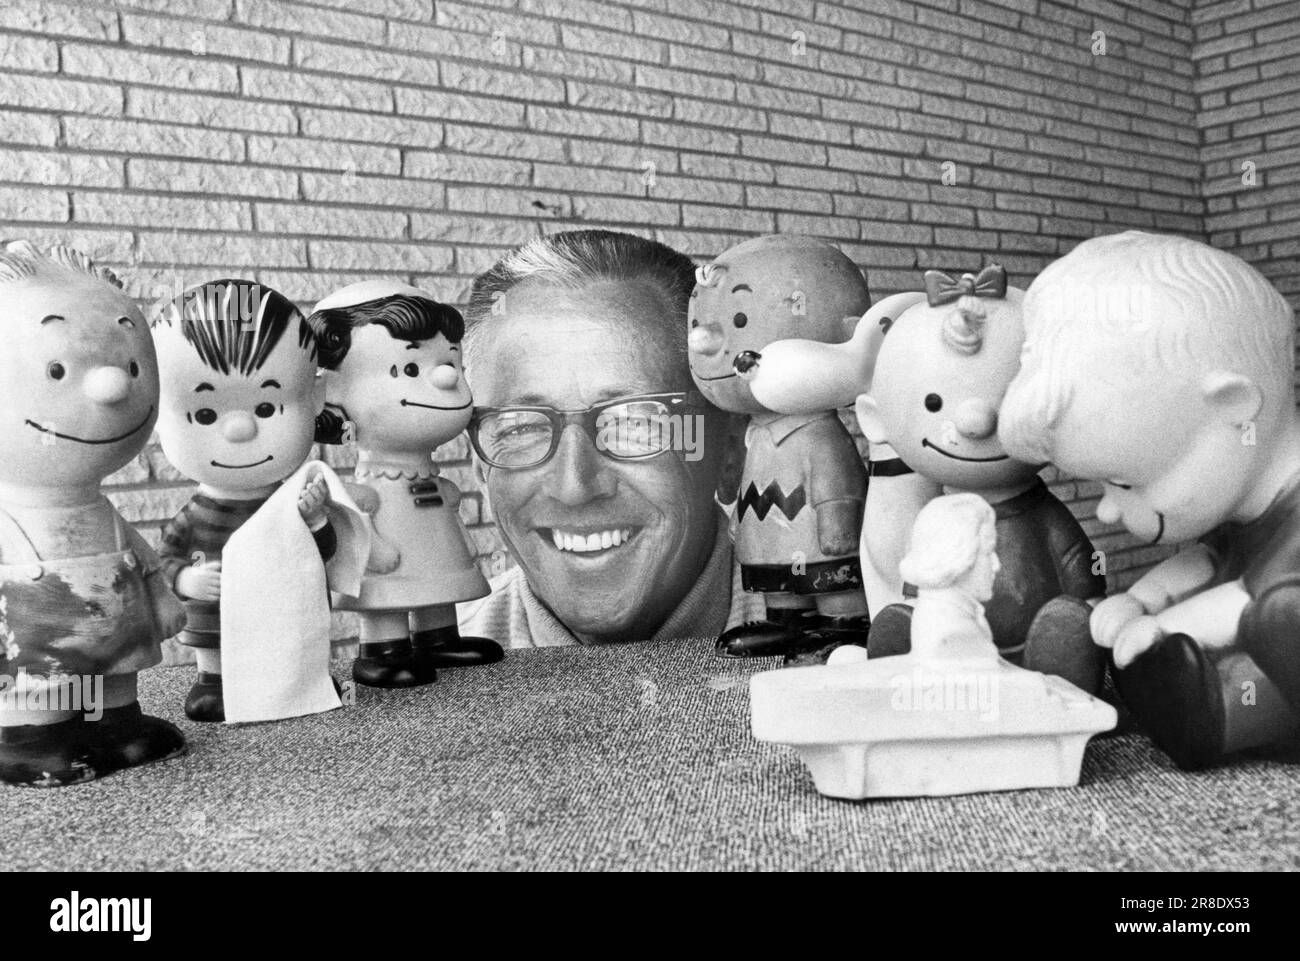 Californie: Octobre 1966 le caricaturiste Charles Schultz est ici entouré par des répliques de poupées en caoutchouc des personnages de sa bande dessinée Peanuts, qui sera vedette dans le spécial Halloween, 'c'est la Grande citrouille, Charlie Brown'. Banque D'Images